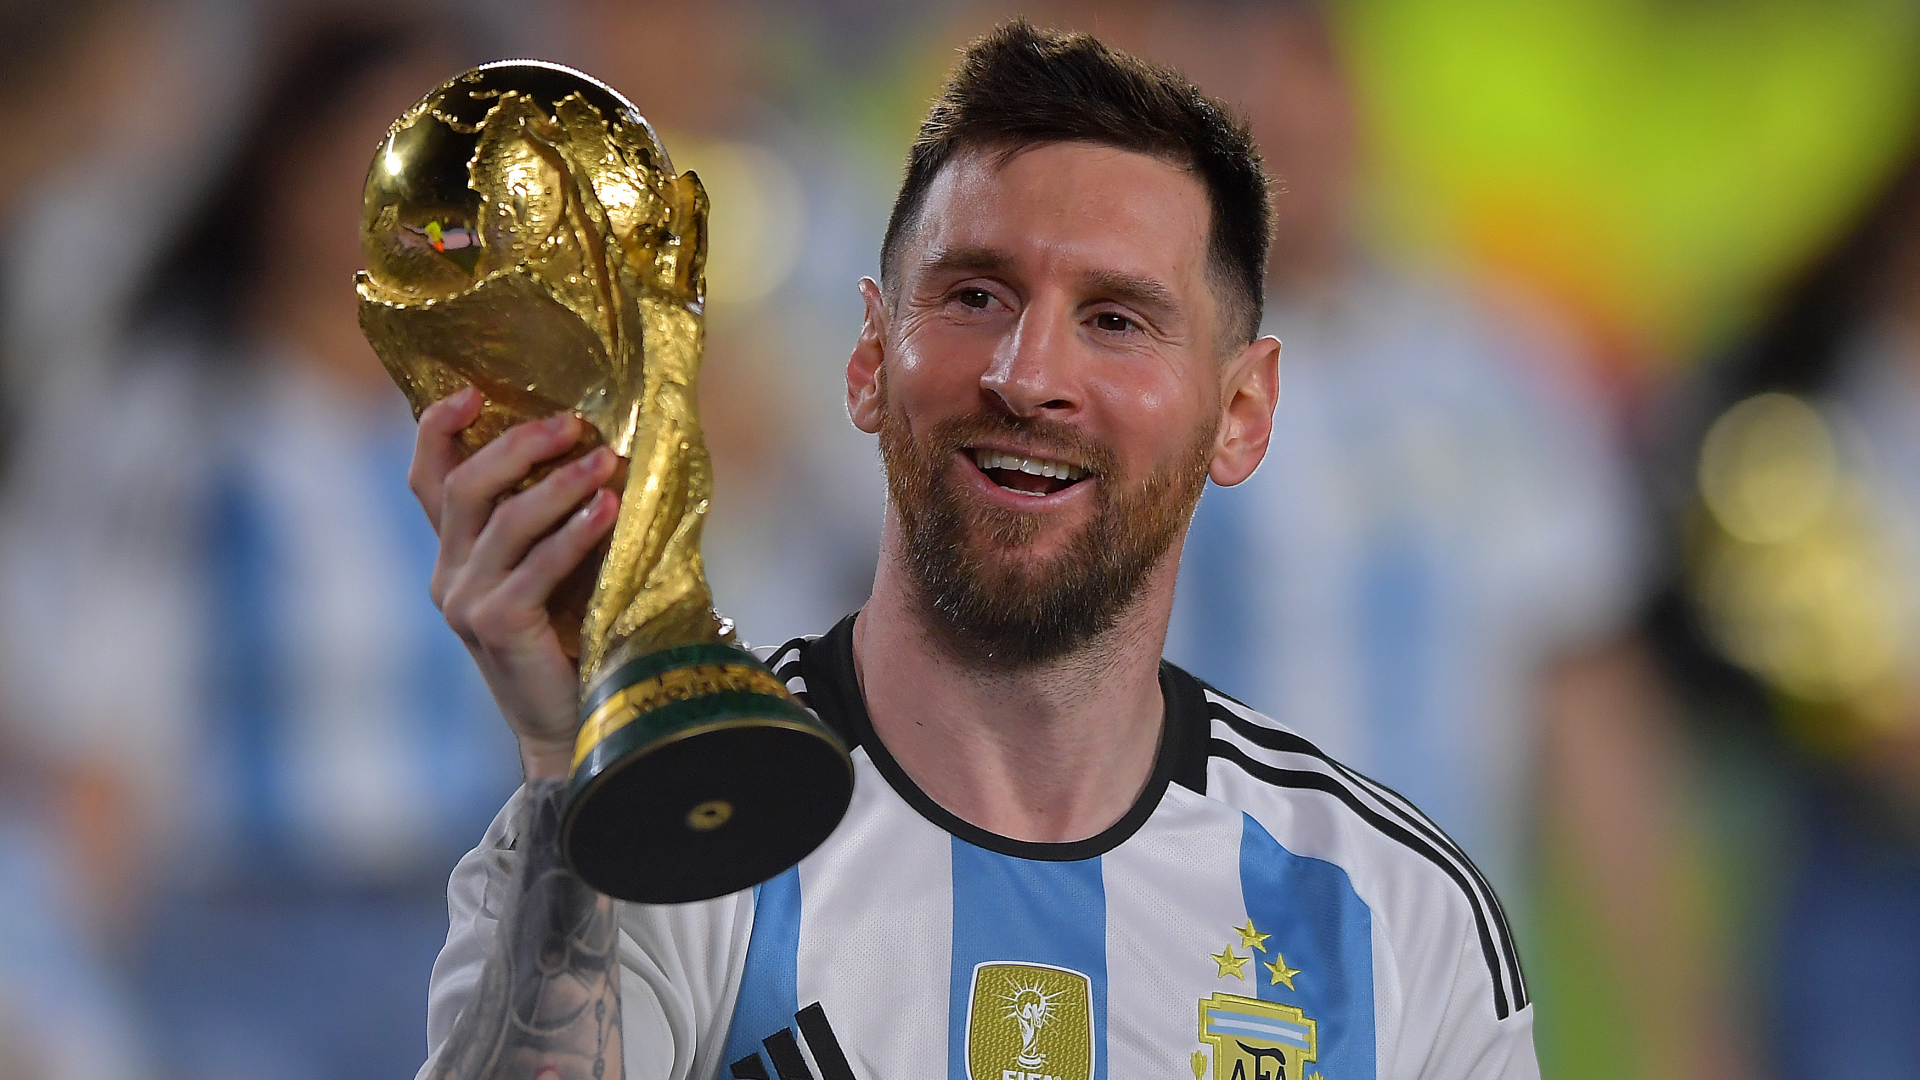 Tiểu sử Messi - Huyền thoại bóng đá Argentina